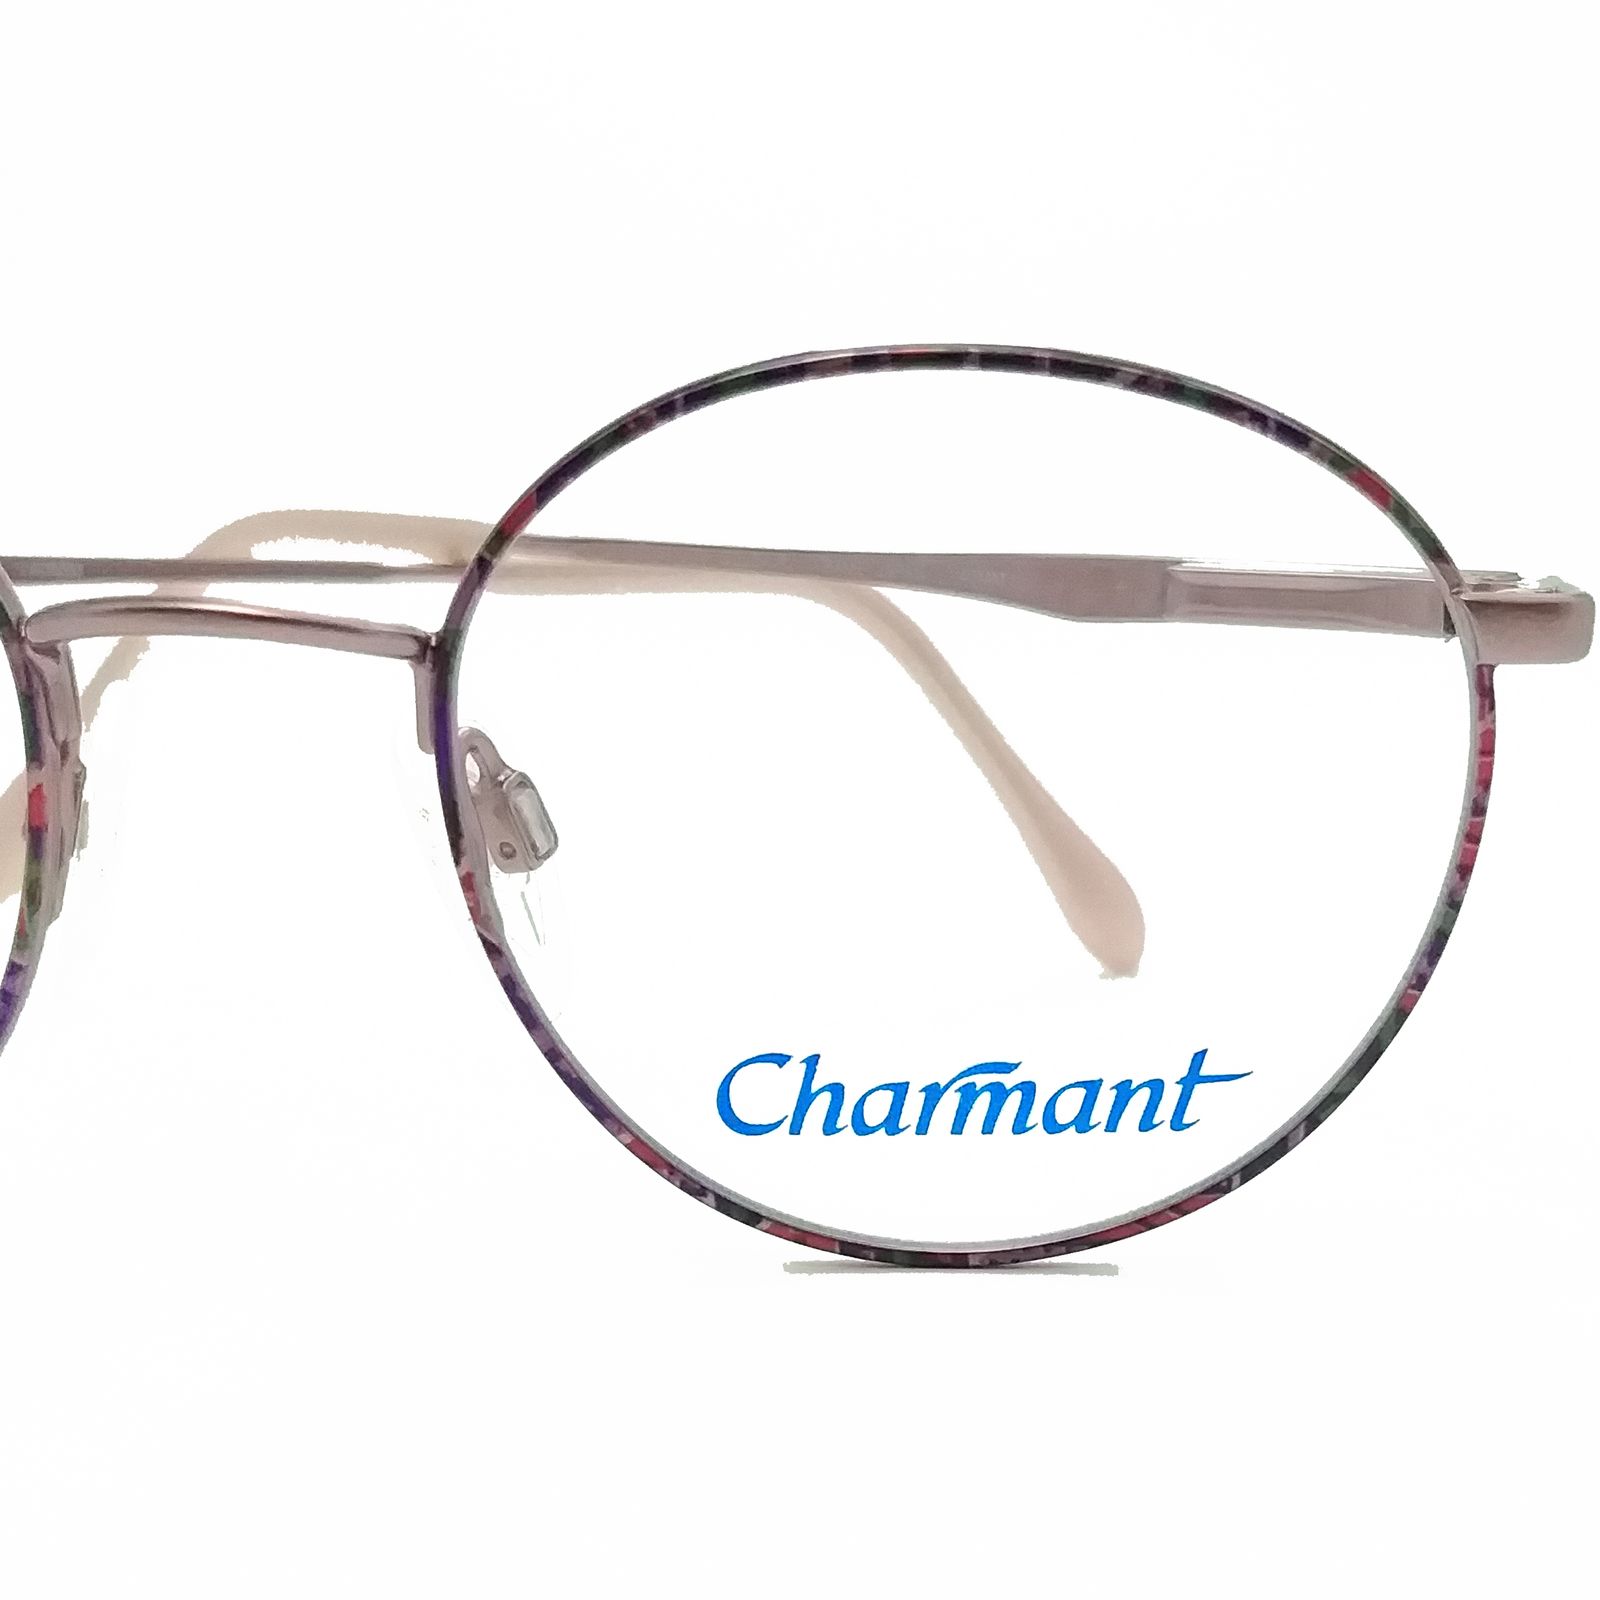 فریم عینک طبی زنانه چارمنت مدل 4250 -  - 8